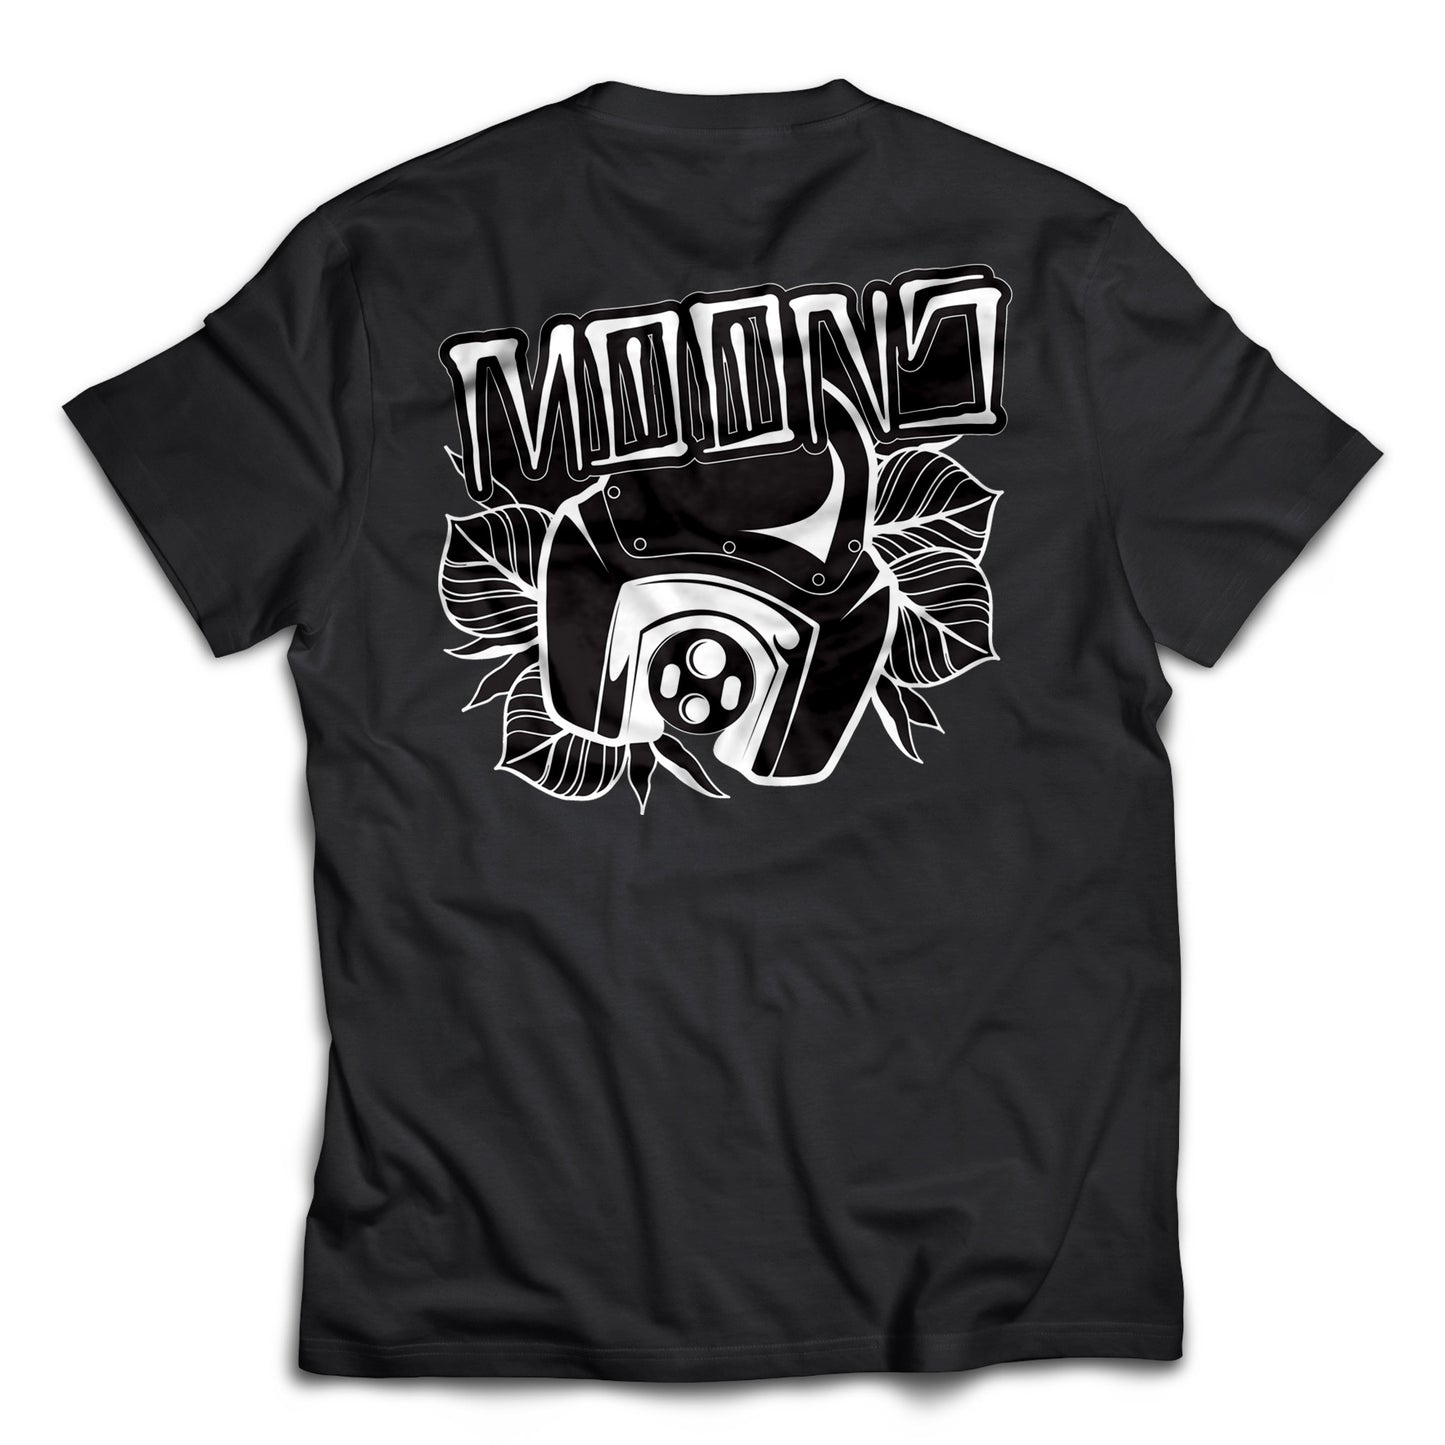 MOONSMC® TSPORT Fairing T-shirt, Apparel, MOONS, MOONSMC® // Moons Motorcycle Culture